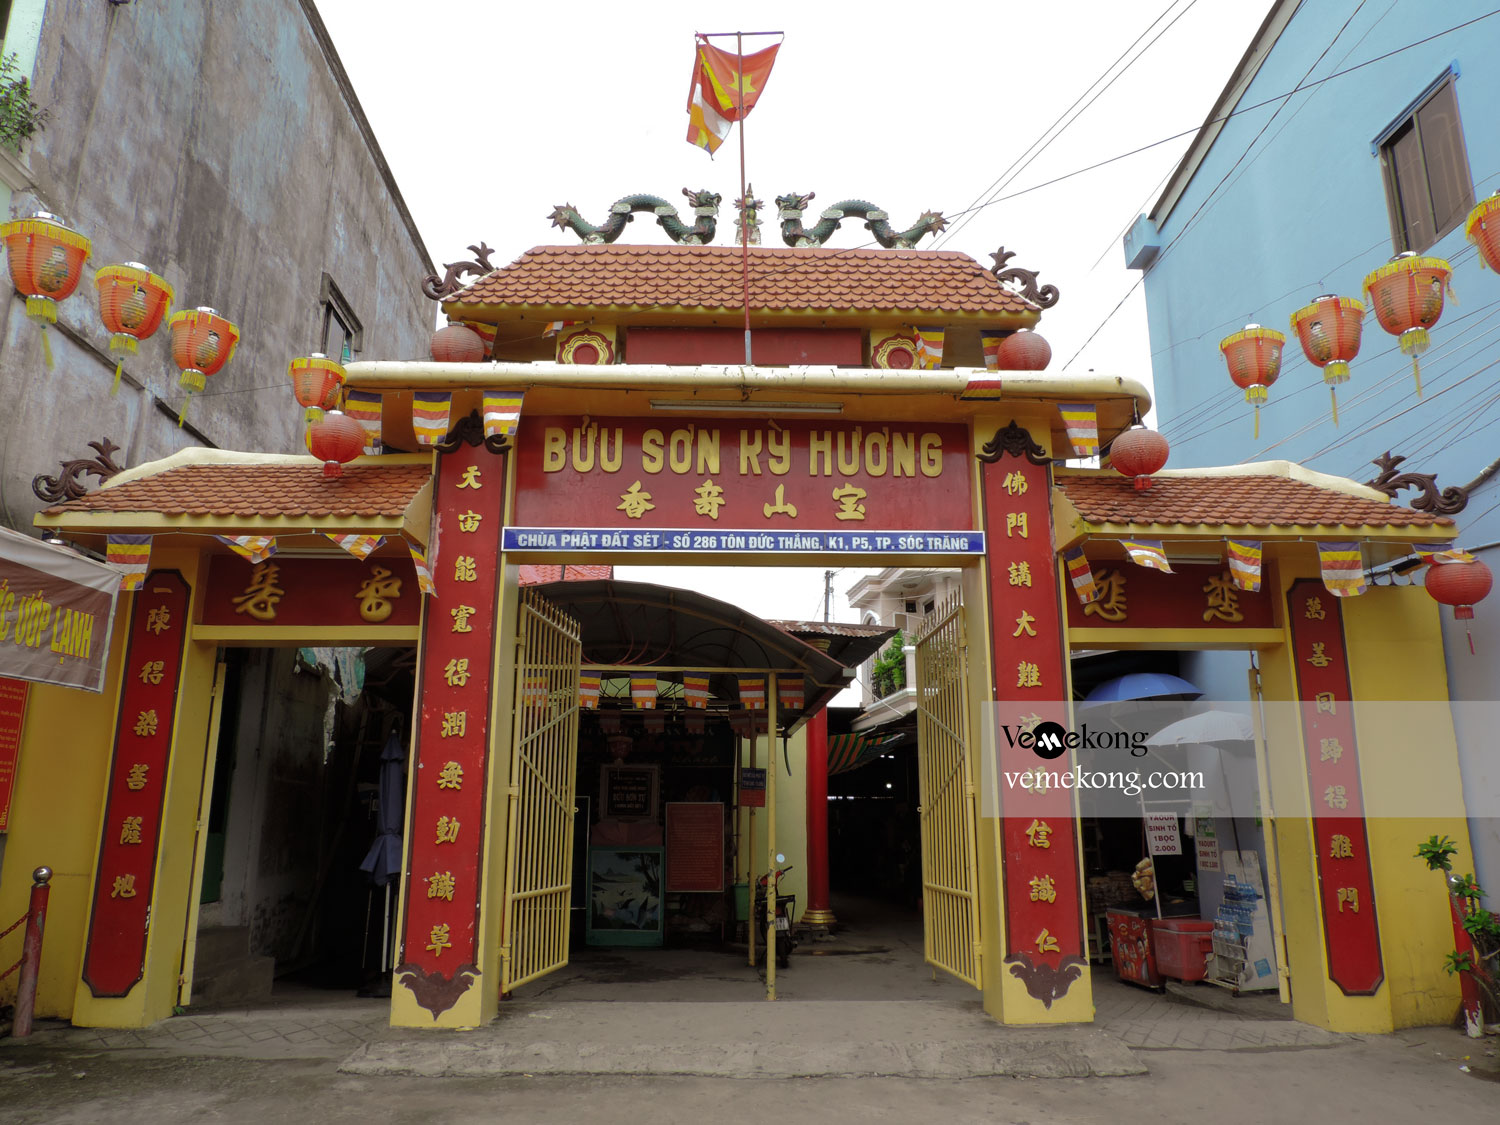 Clay Pagoda (Chua Dat Set) - Things to Do & See in Soc Trang